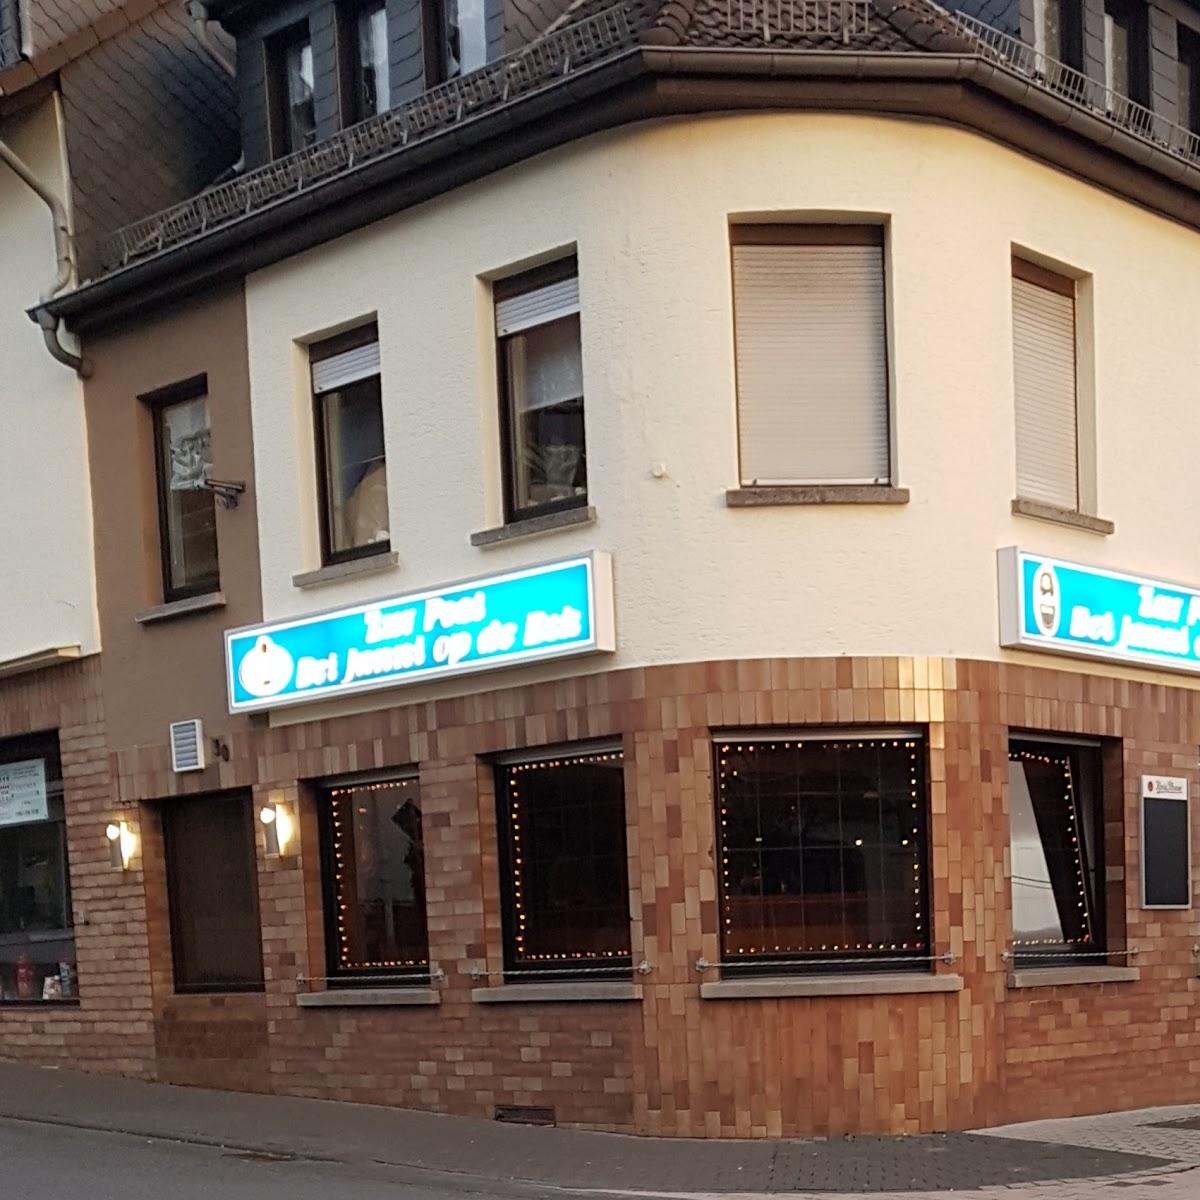 Restaurant "Taverne zur Post" in  Asbach